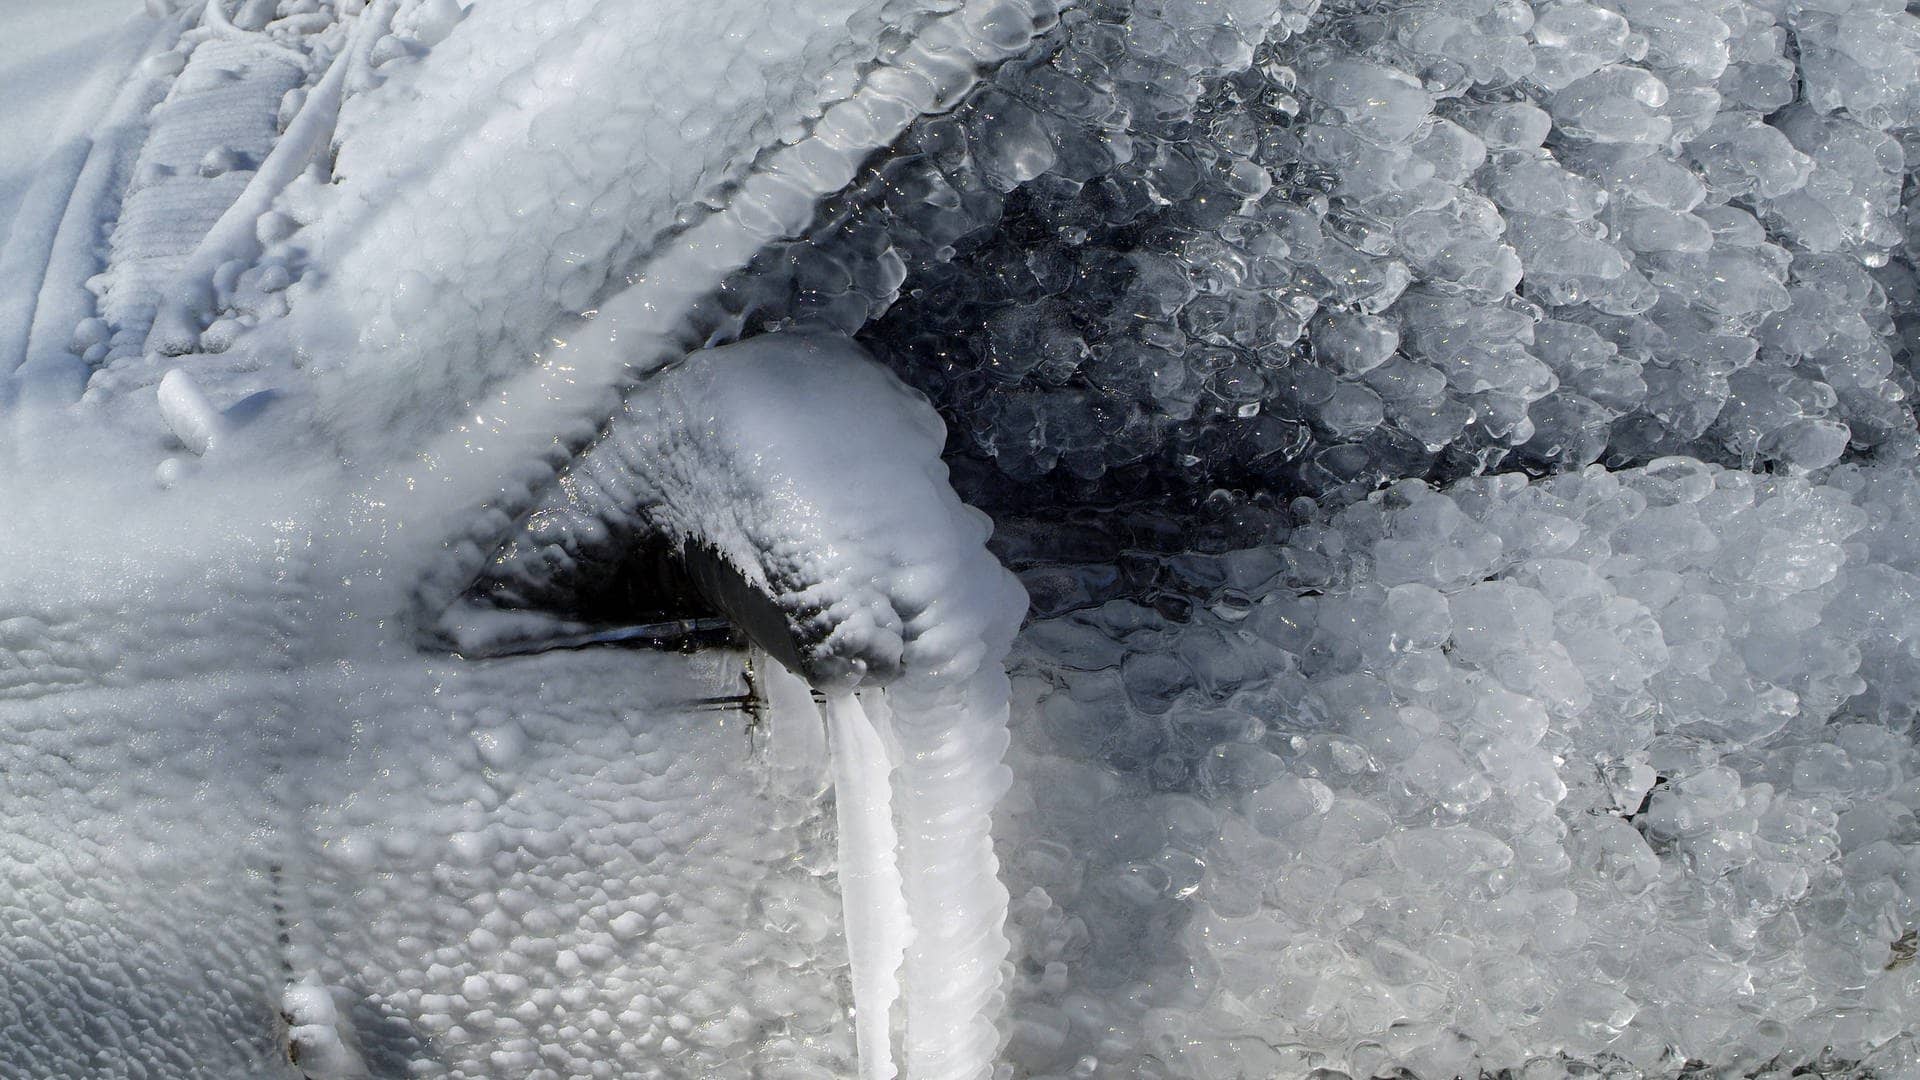 Autoscheibe im Winter maximal gefroren, überall ist Eis – innen, außen und an den Spiegeln sitzt es fest. Da braucht es gute Tipps zum enteisen. (Foto: IMAGO, Design Pics)